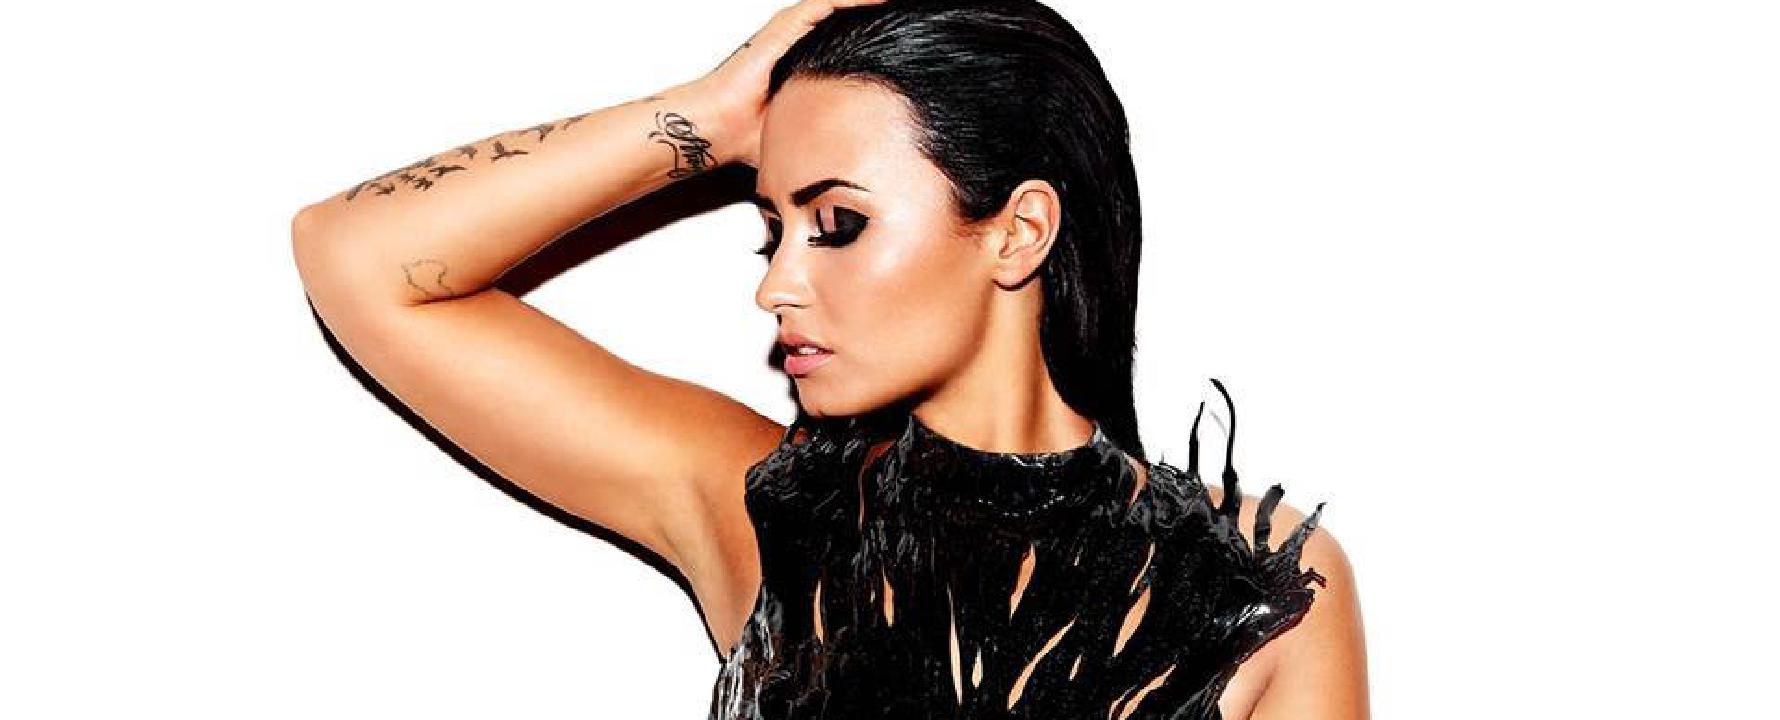 Fotografia promocional de Demi Lovato.